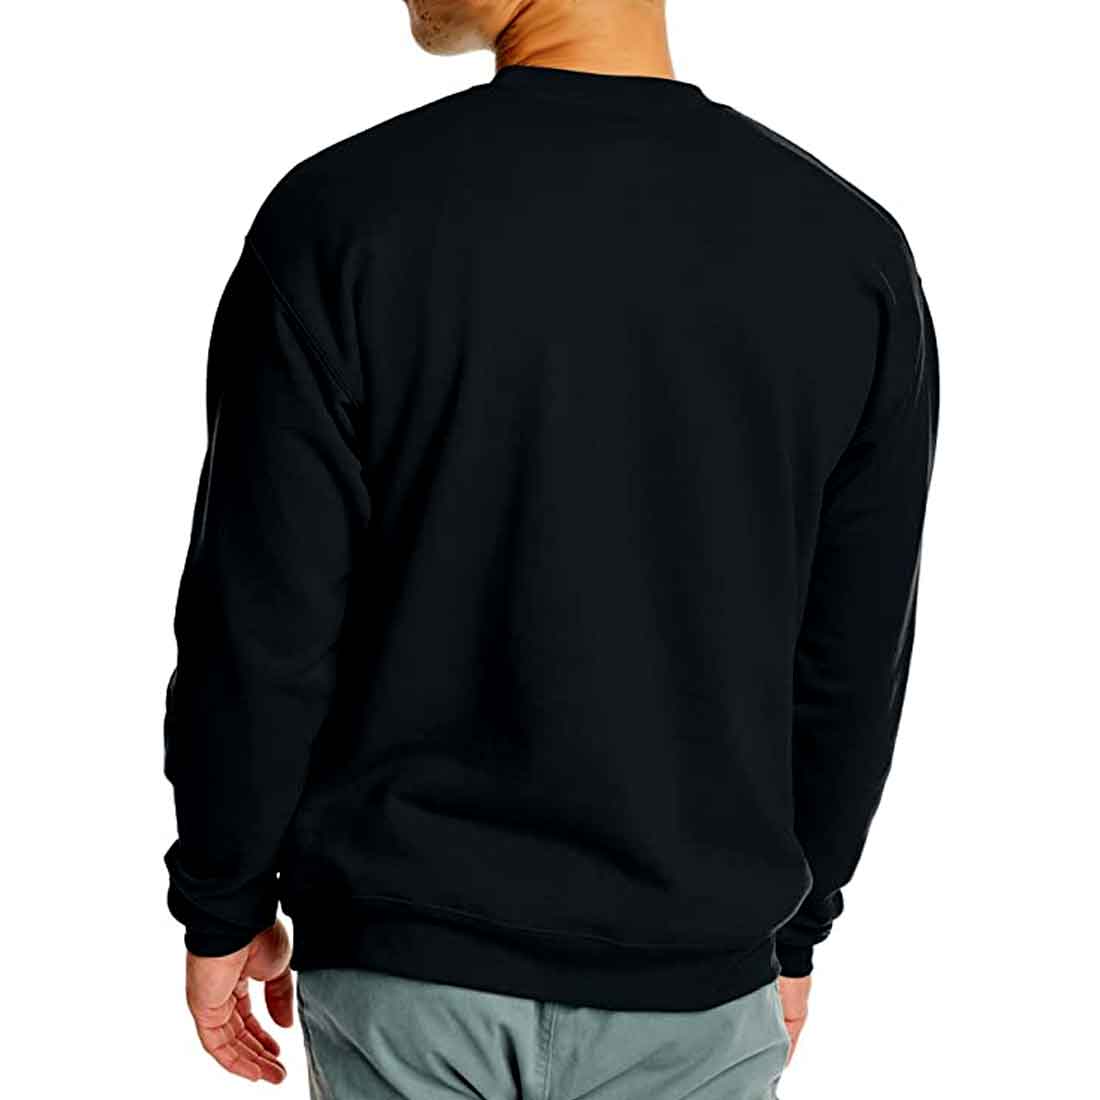 Mens Designer Sweatshirts for Men Full Sleeves - Sorry